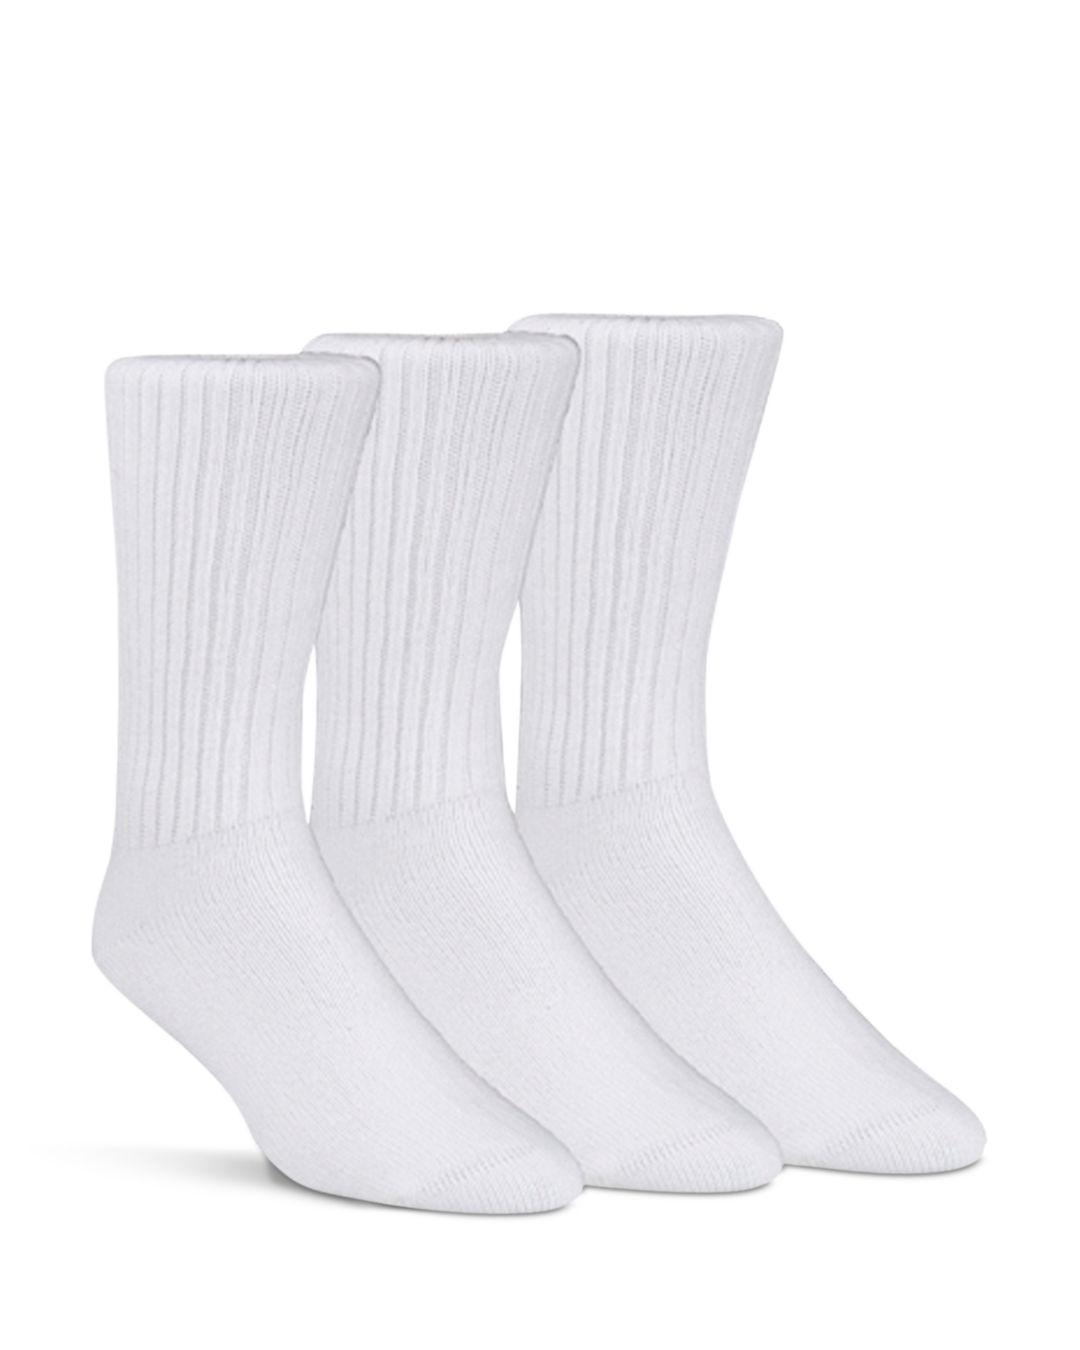 Calvin Klein Classic Crew Socks, Pack Of 3 in White for Men - Lyst